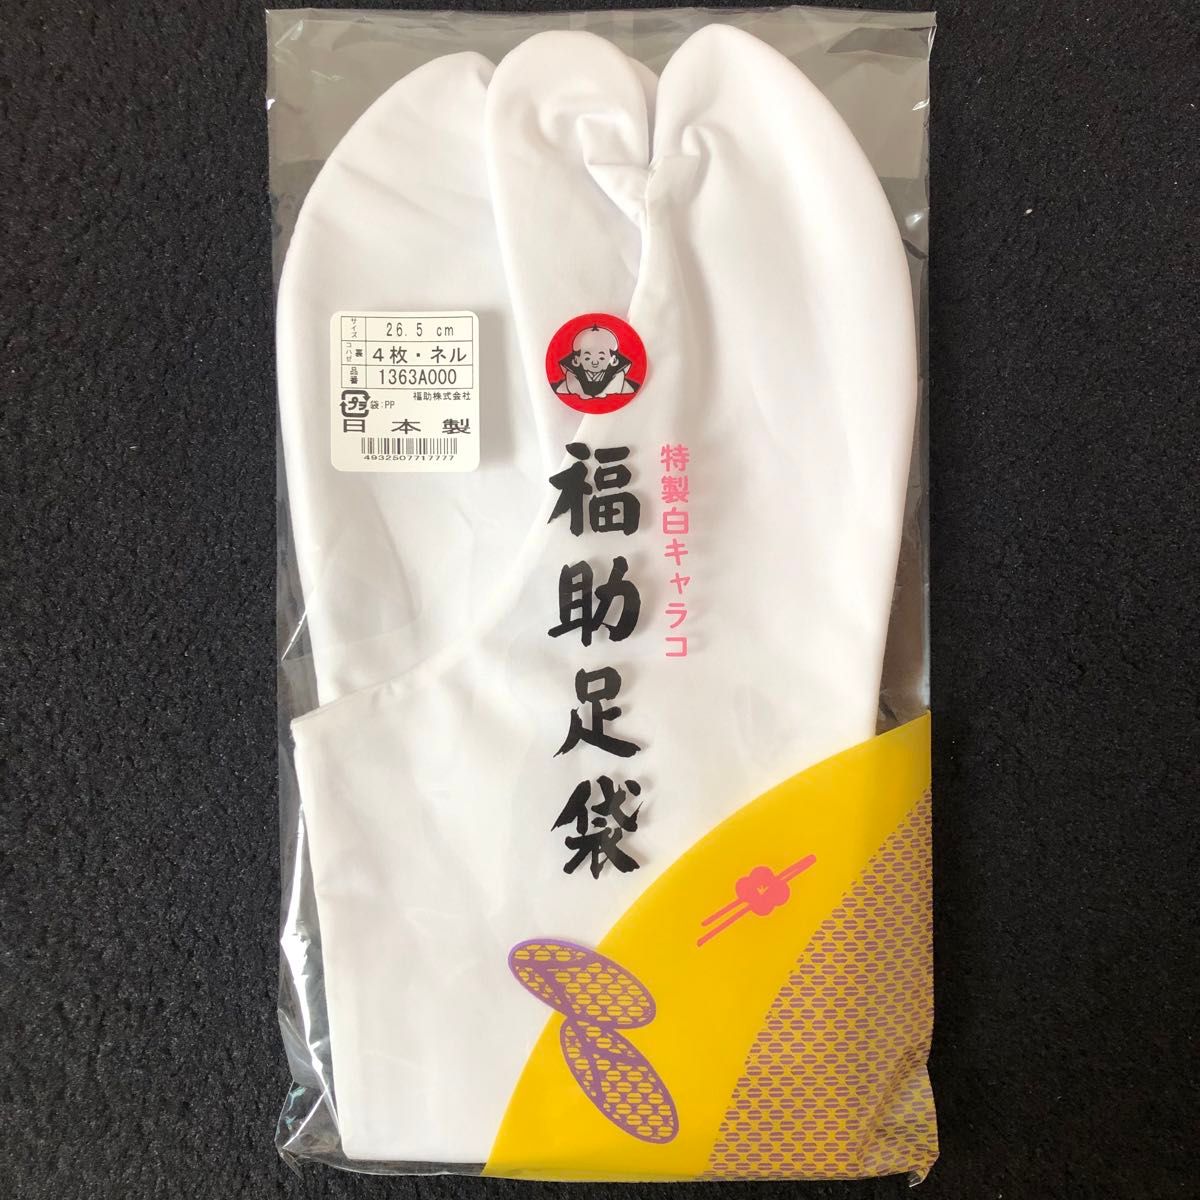 【送料無料】足袋 26.5cm(ネル) 3つセット